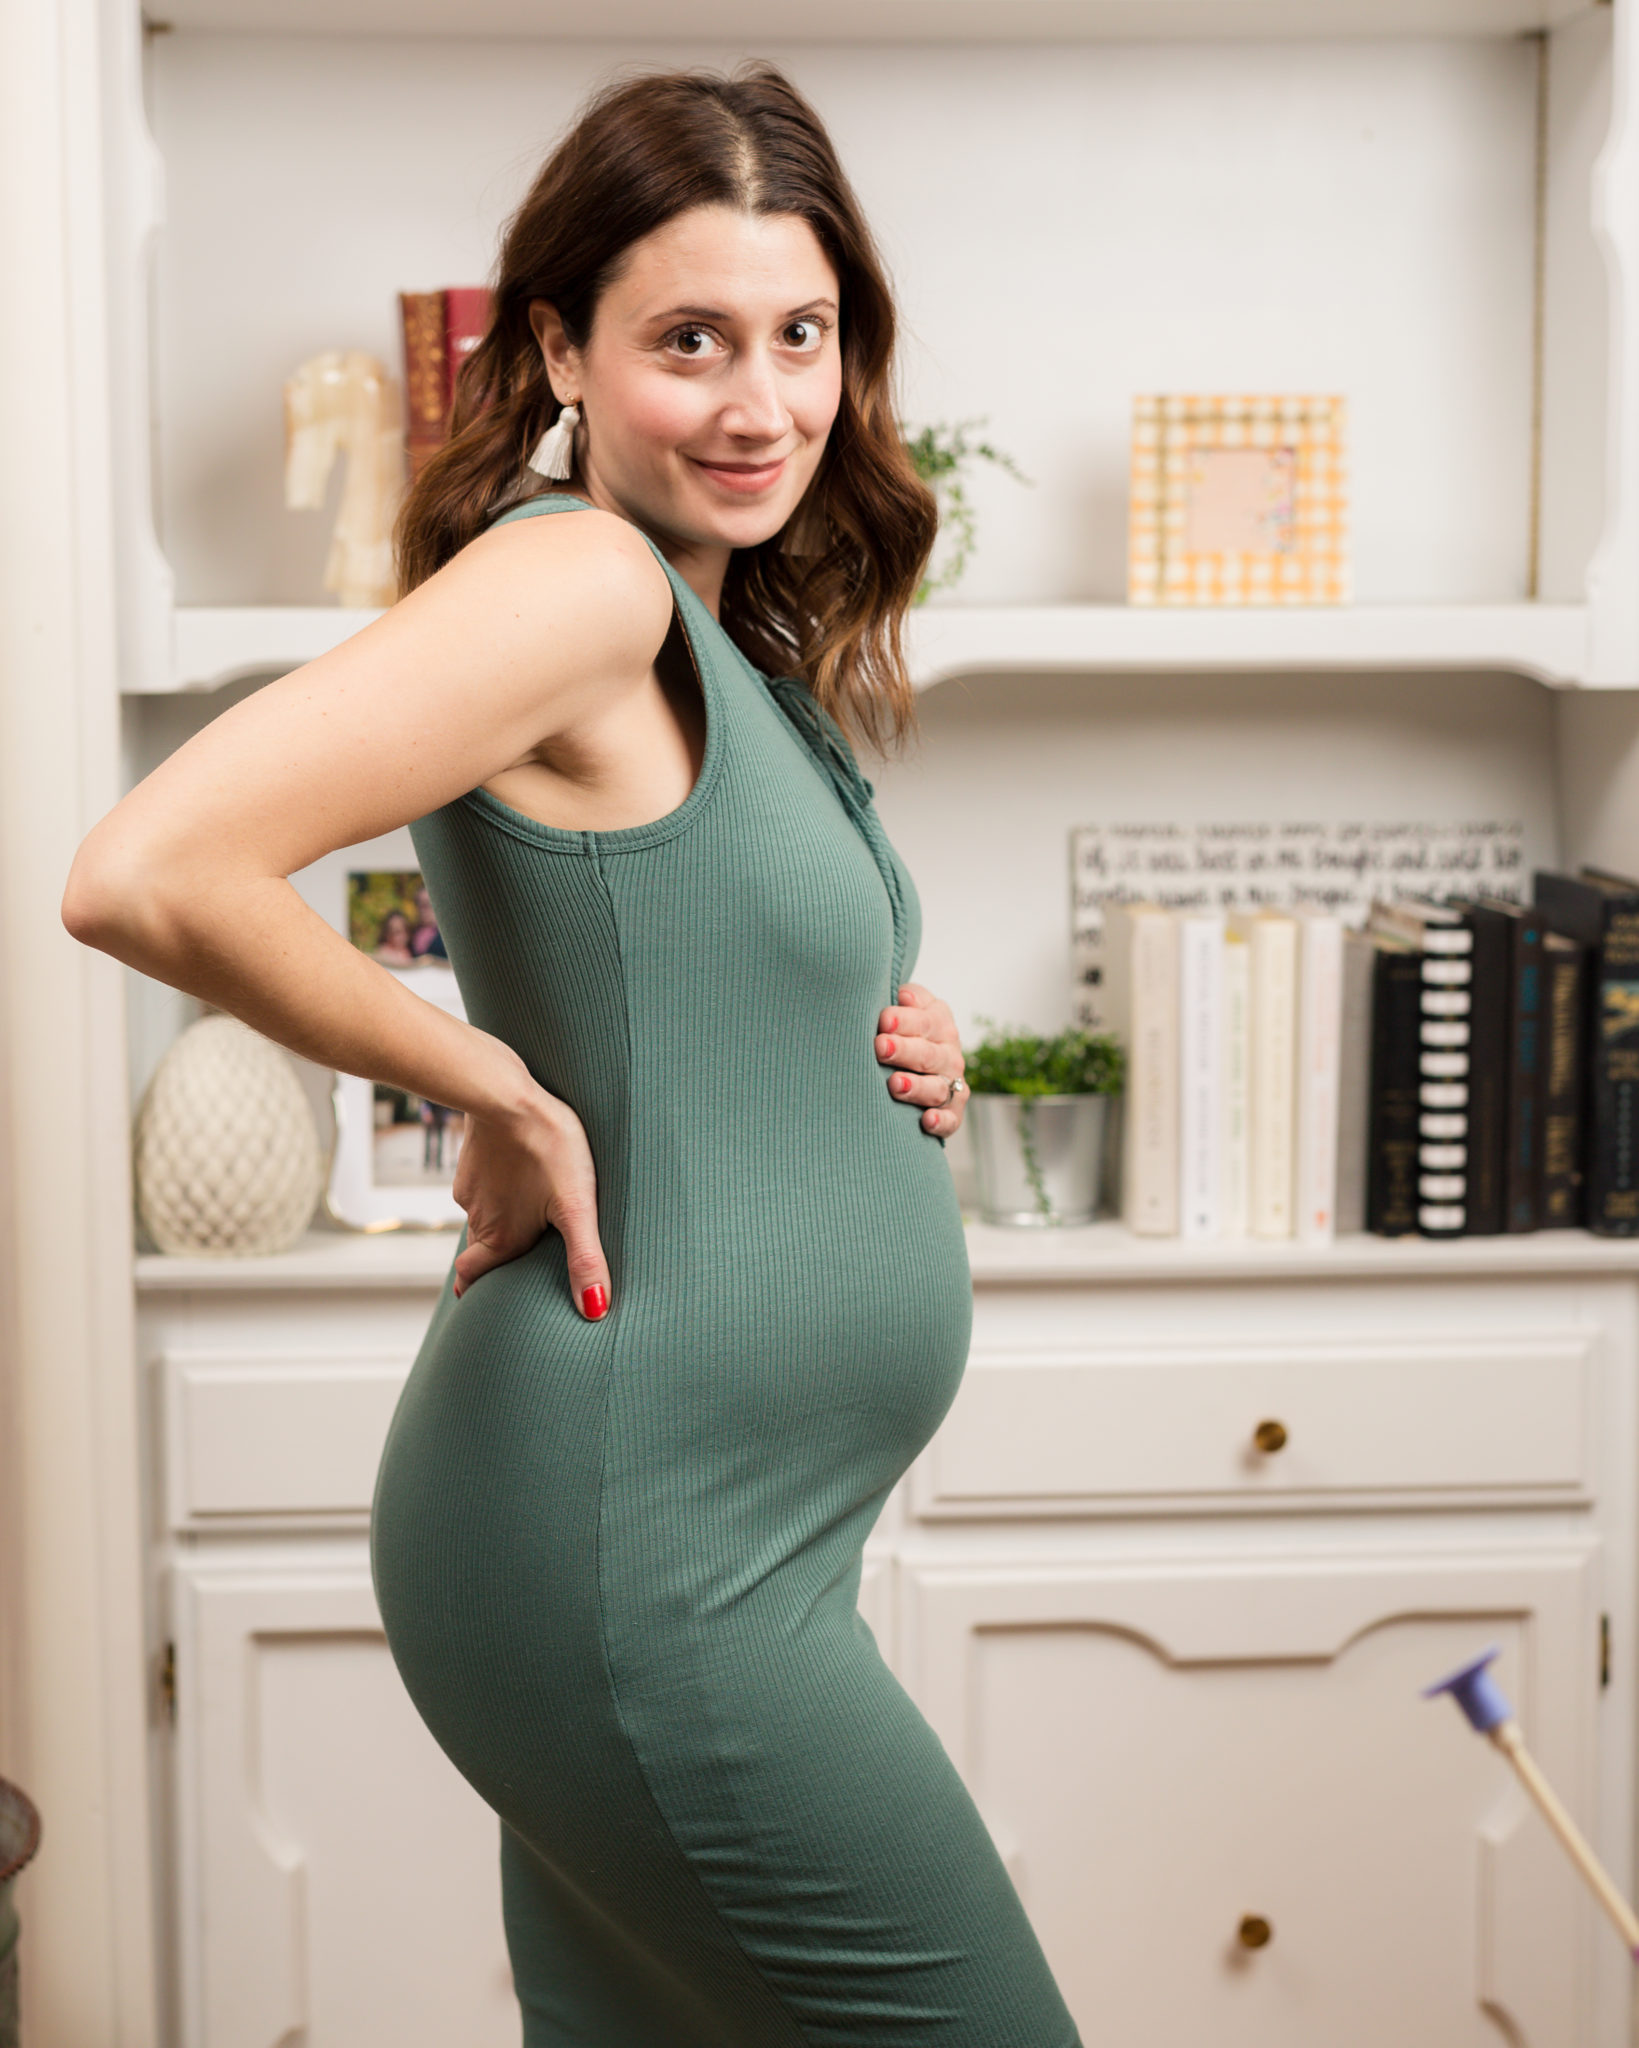 22 week pregnancy update